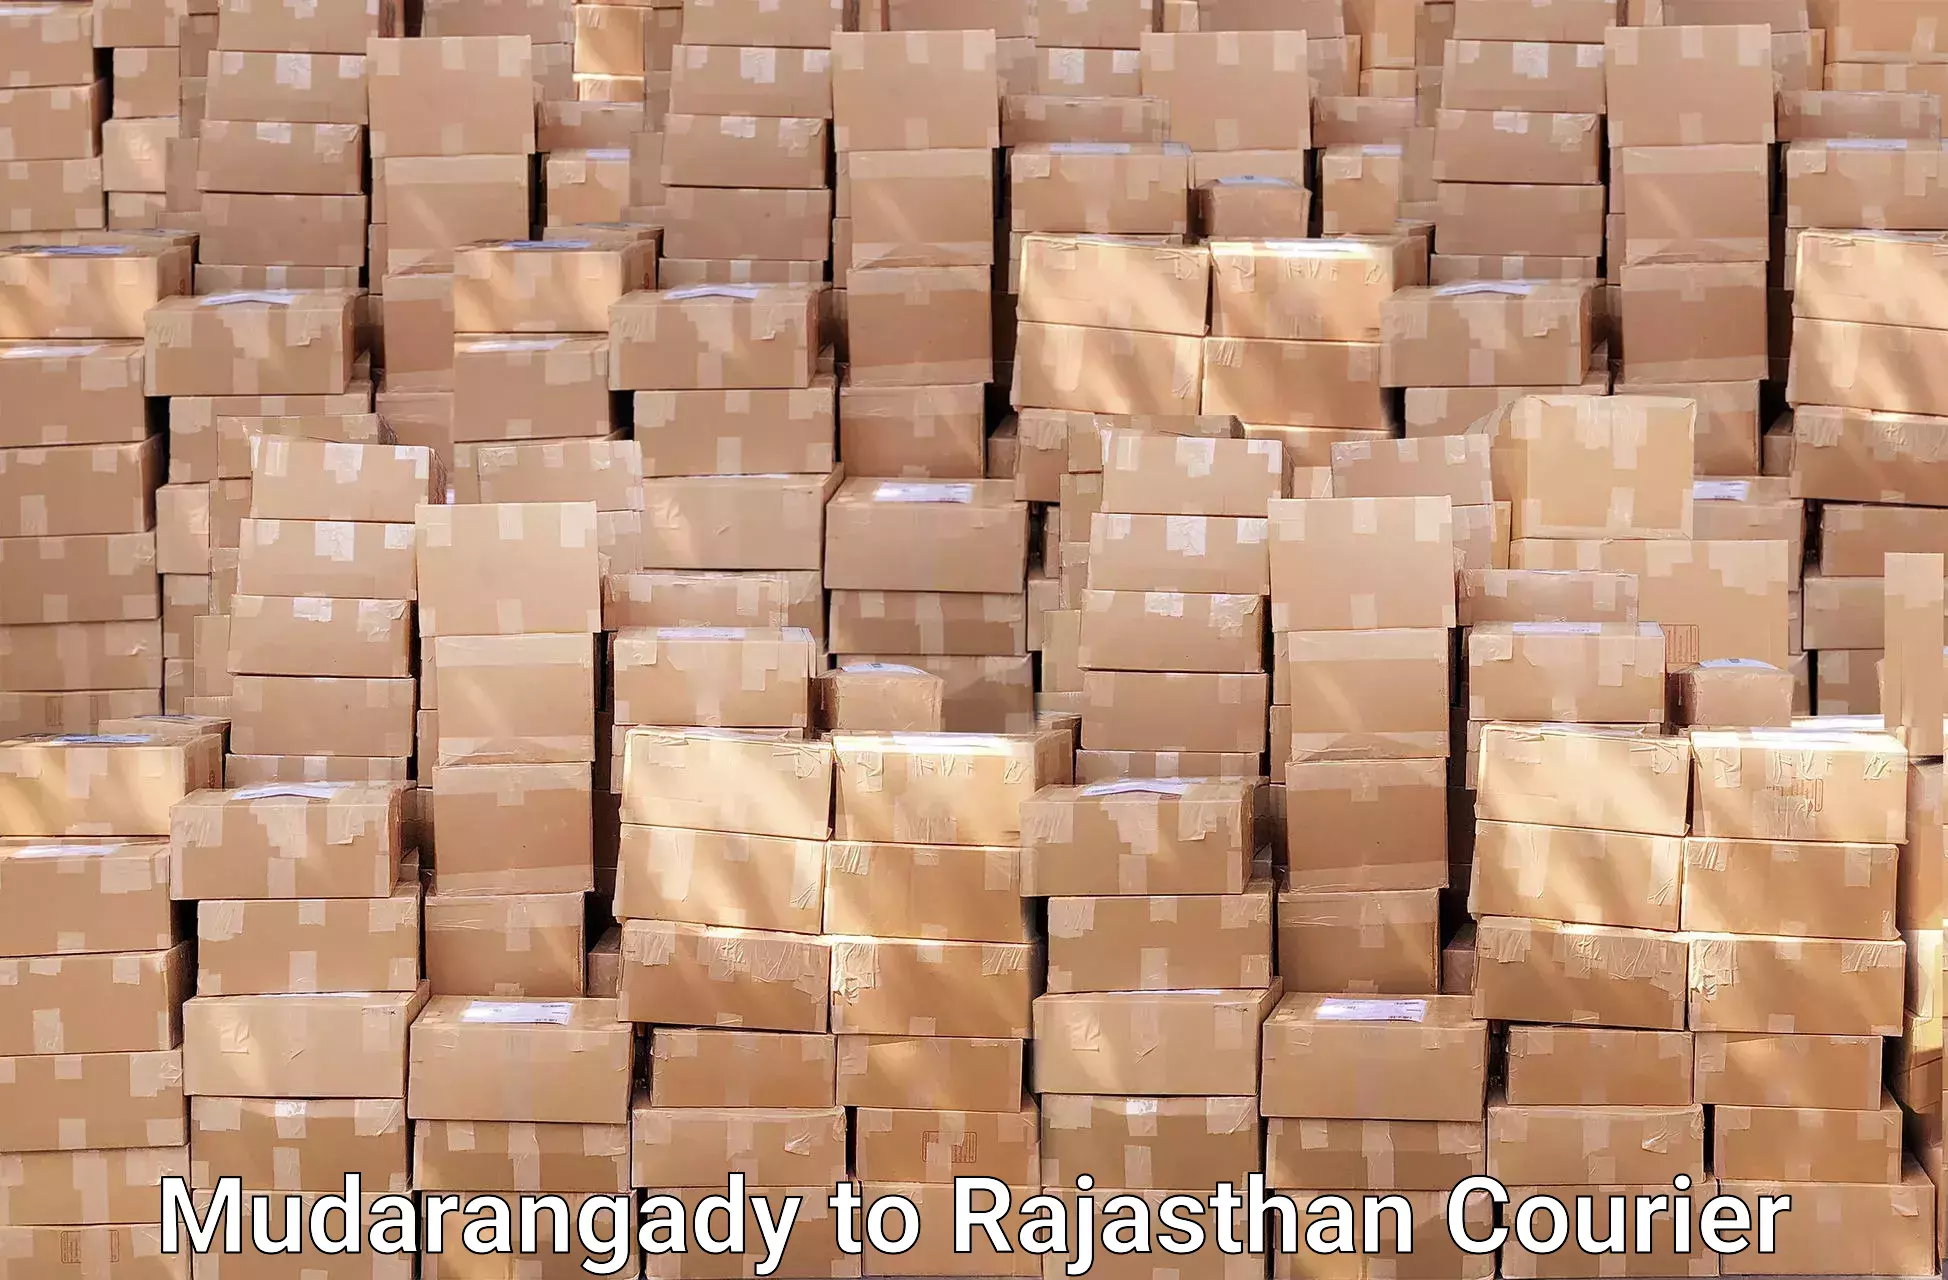 Furniture transport experts Mudarangady to Rajasthan